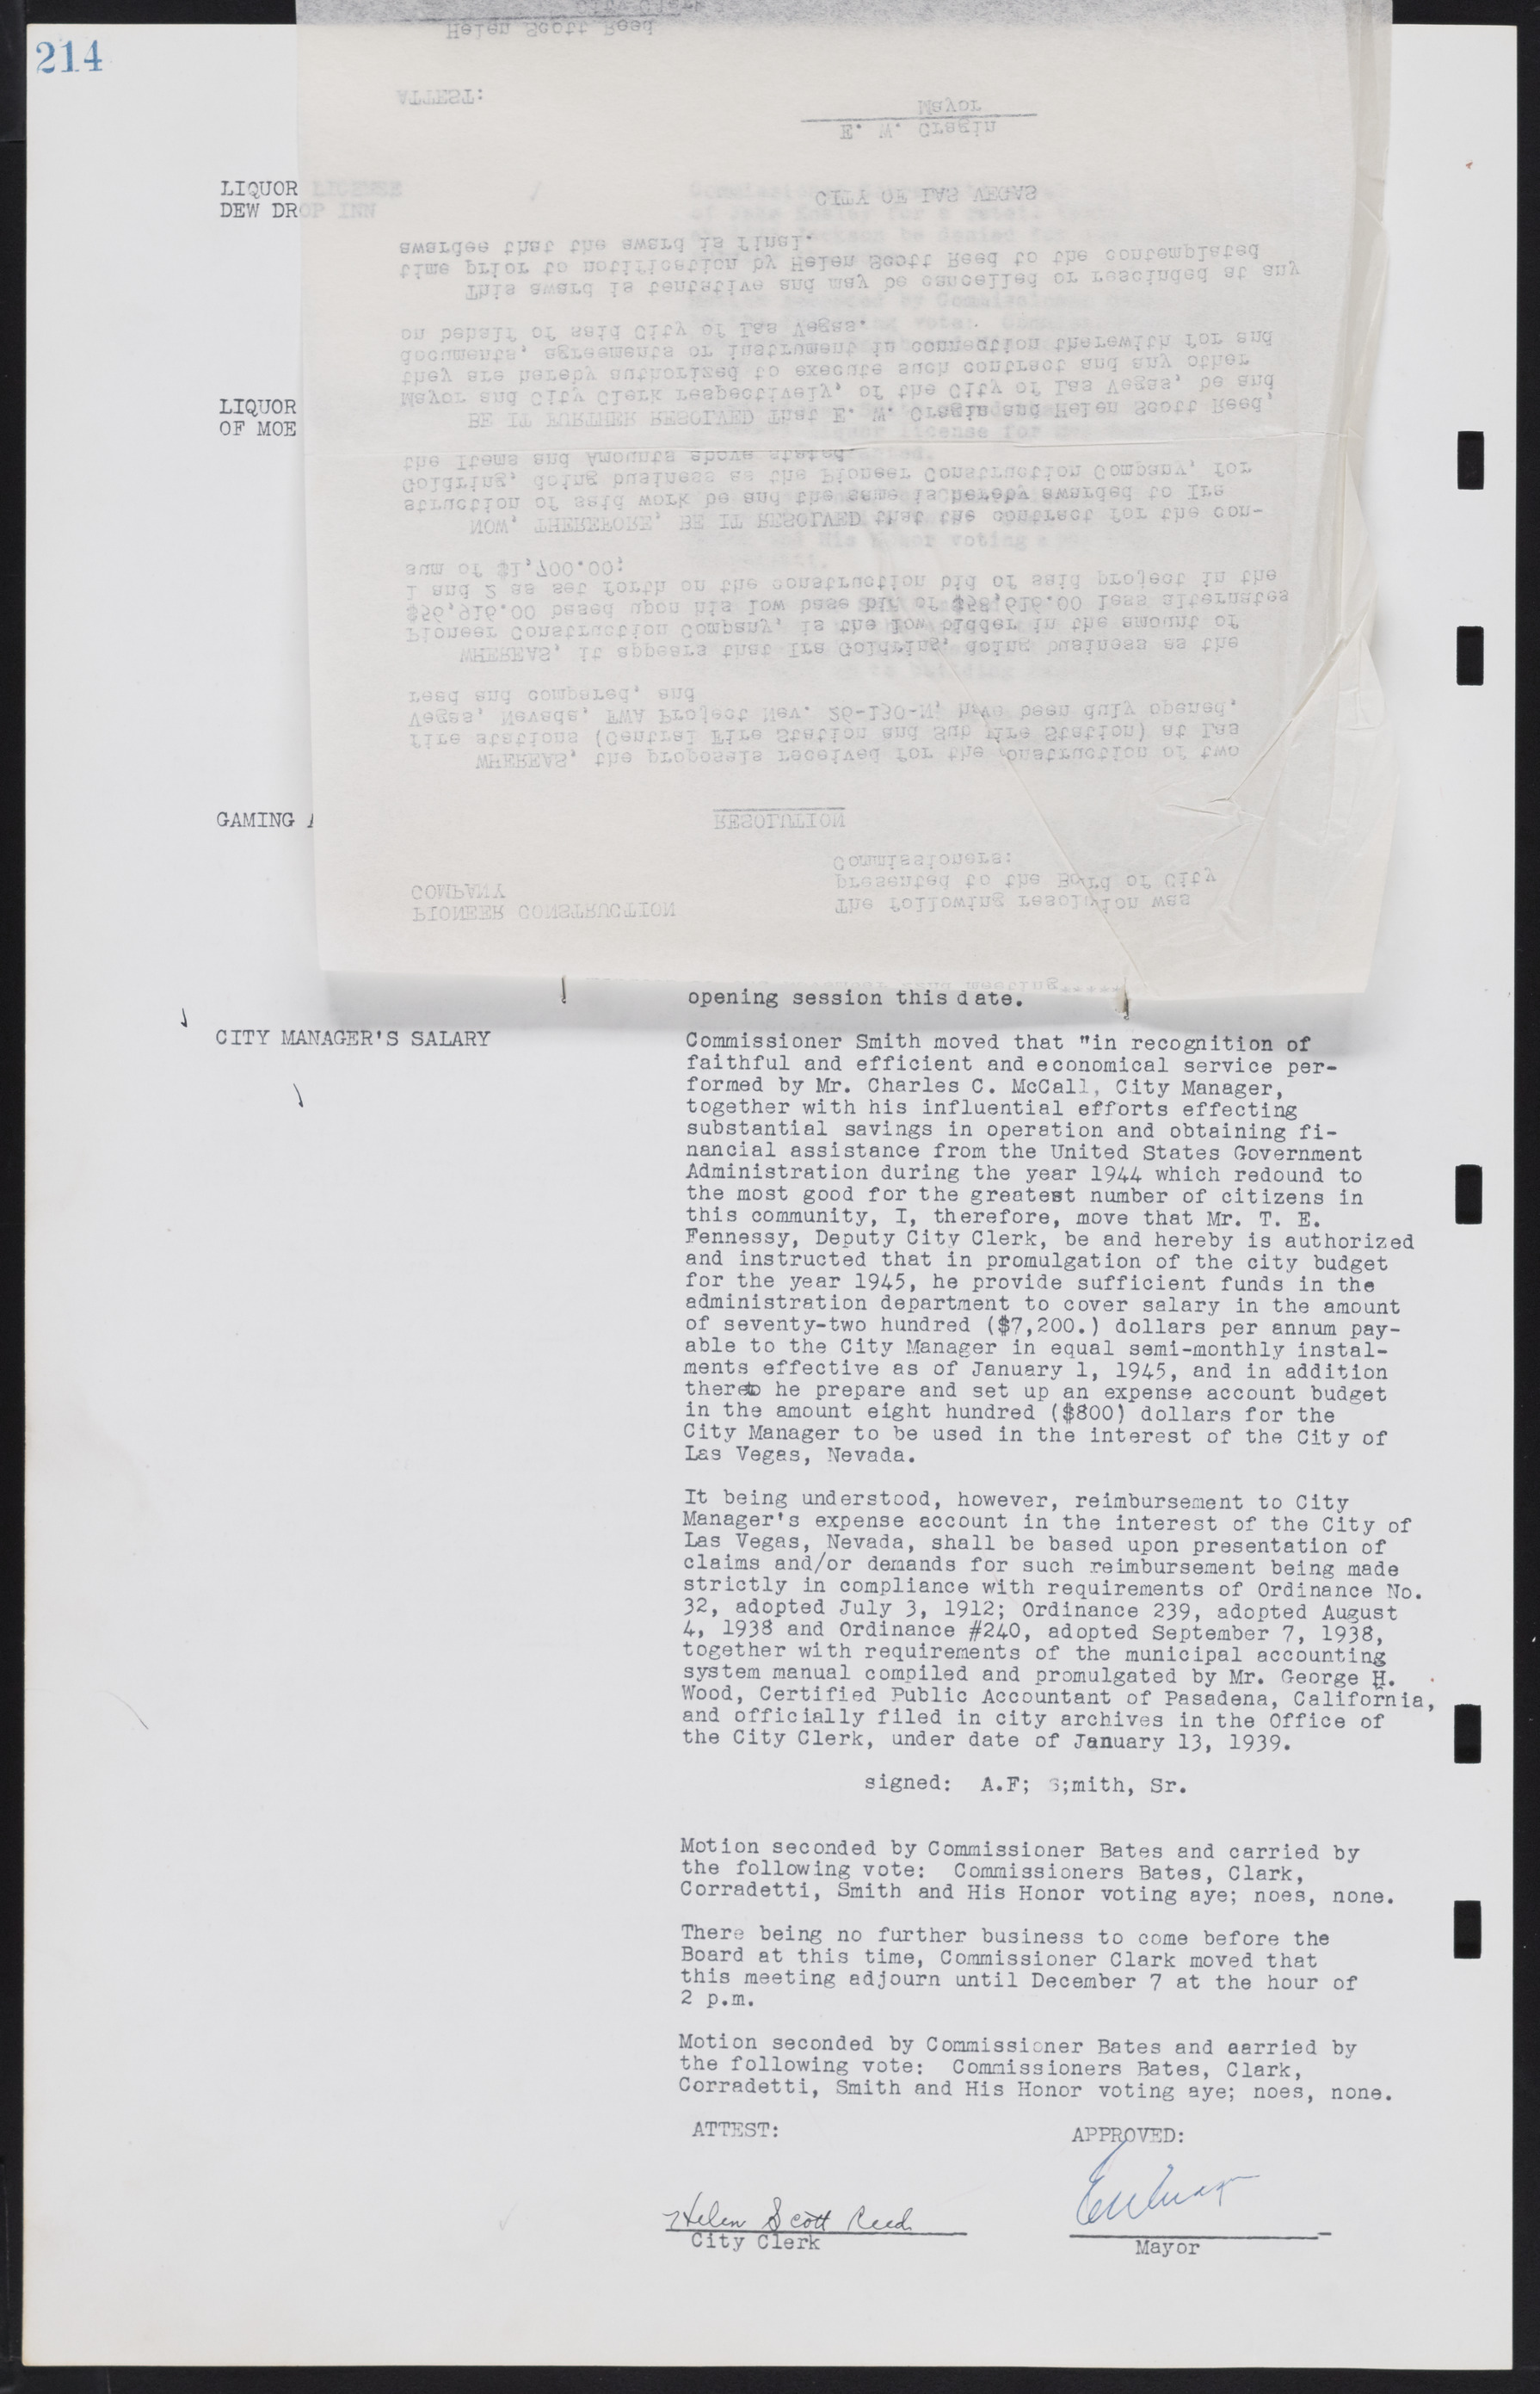 Las Vegas City Commission Minutes, August 11, 1942 to December 30, 1946, lvc000005-234